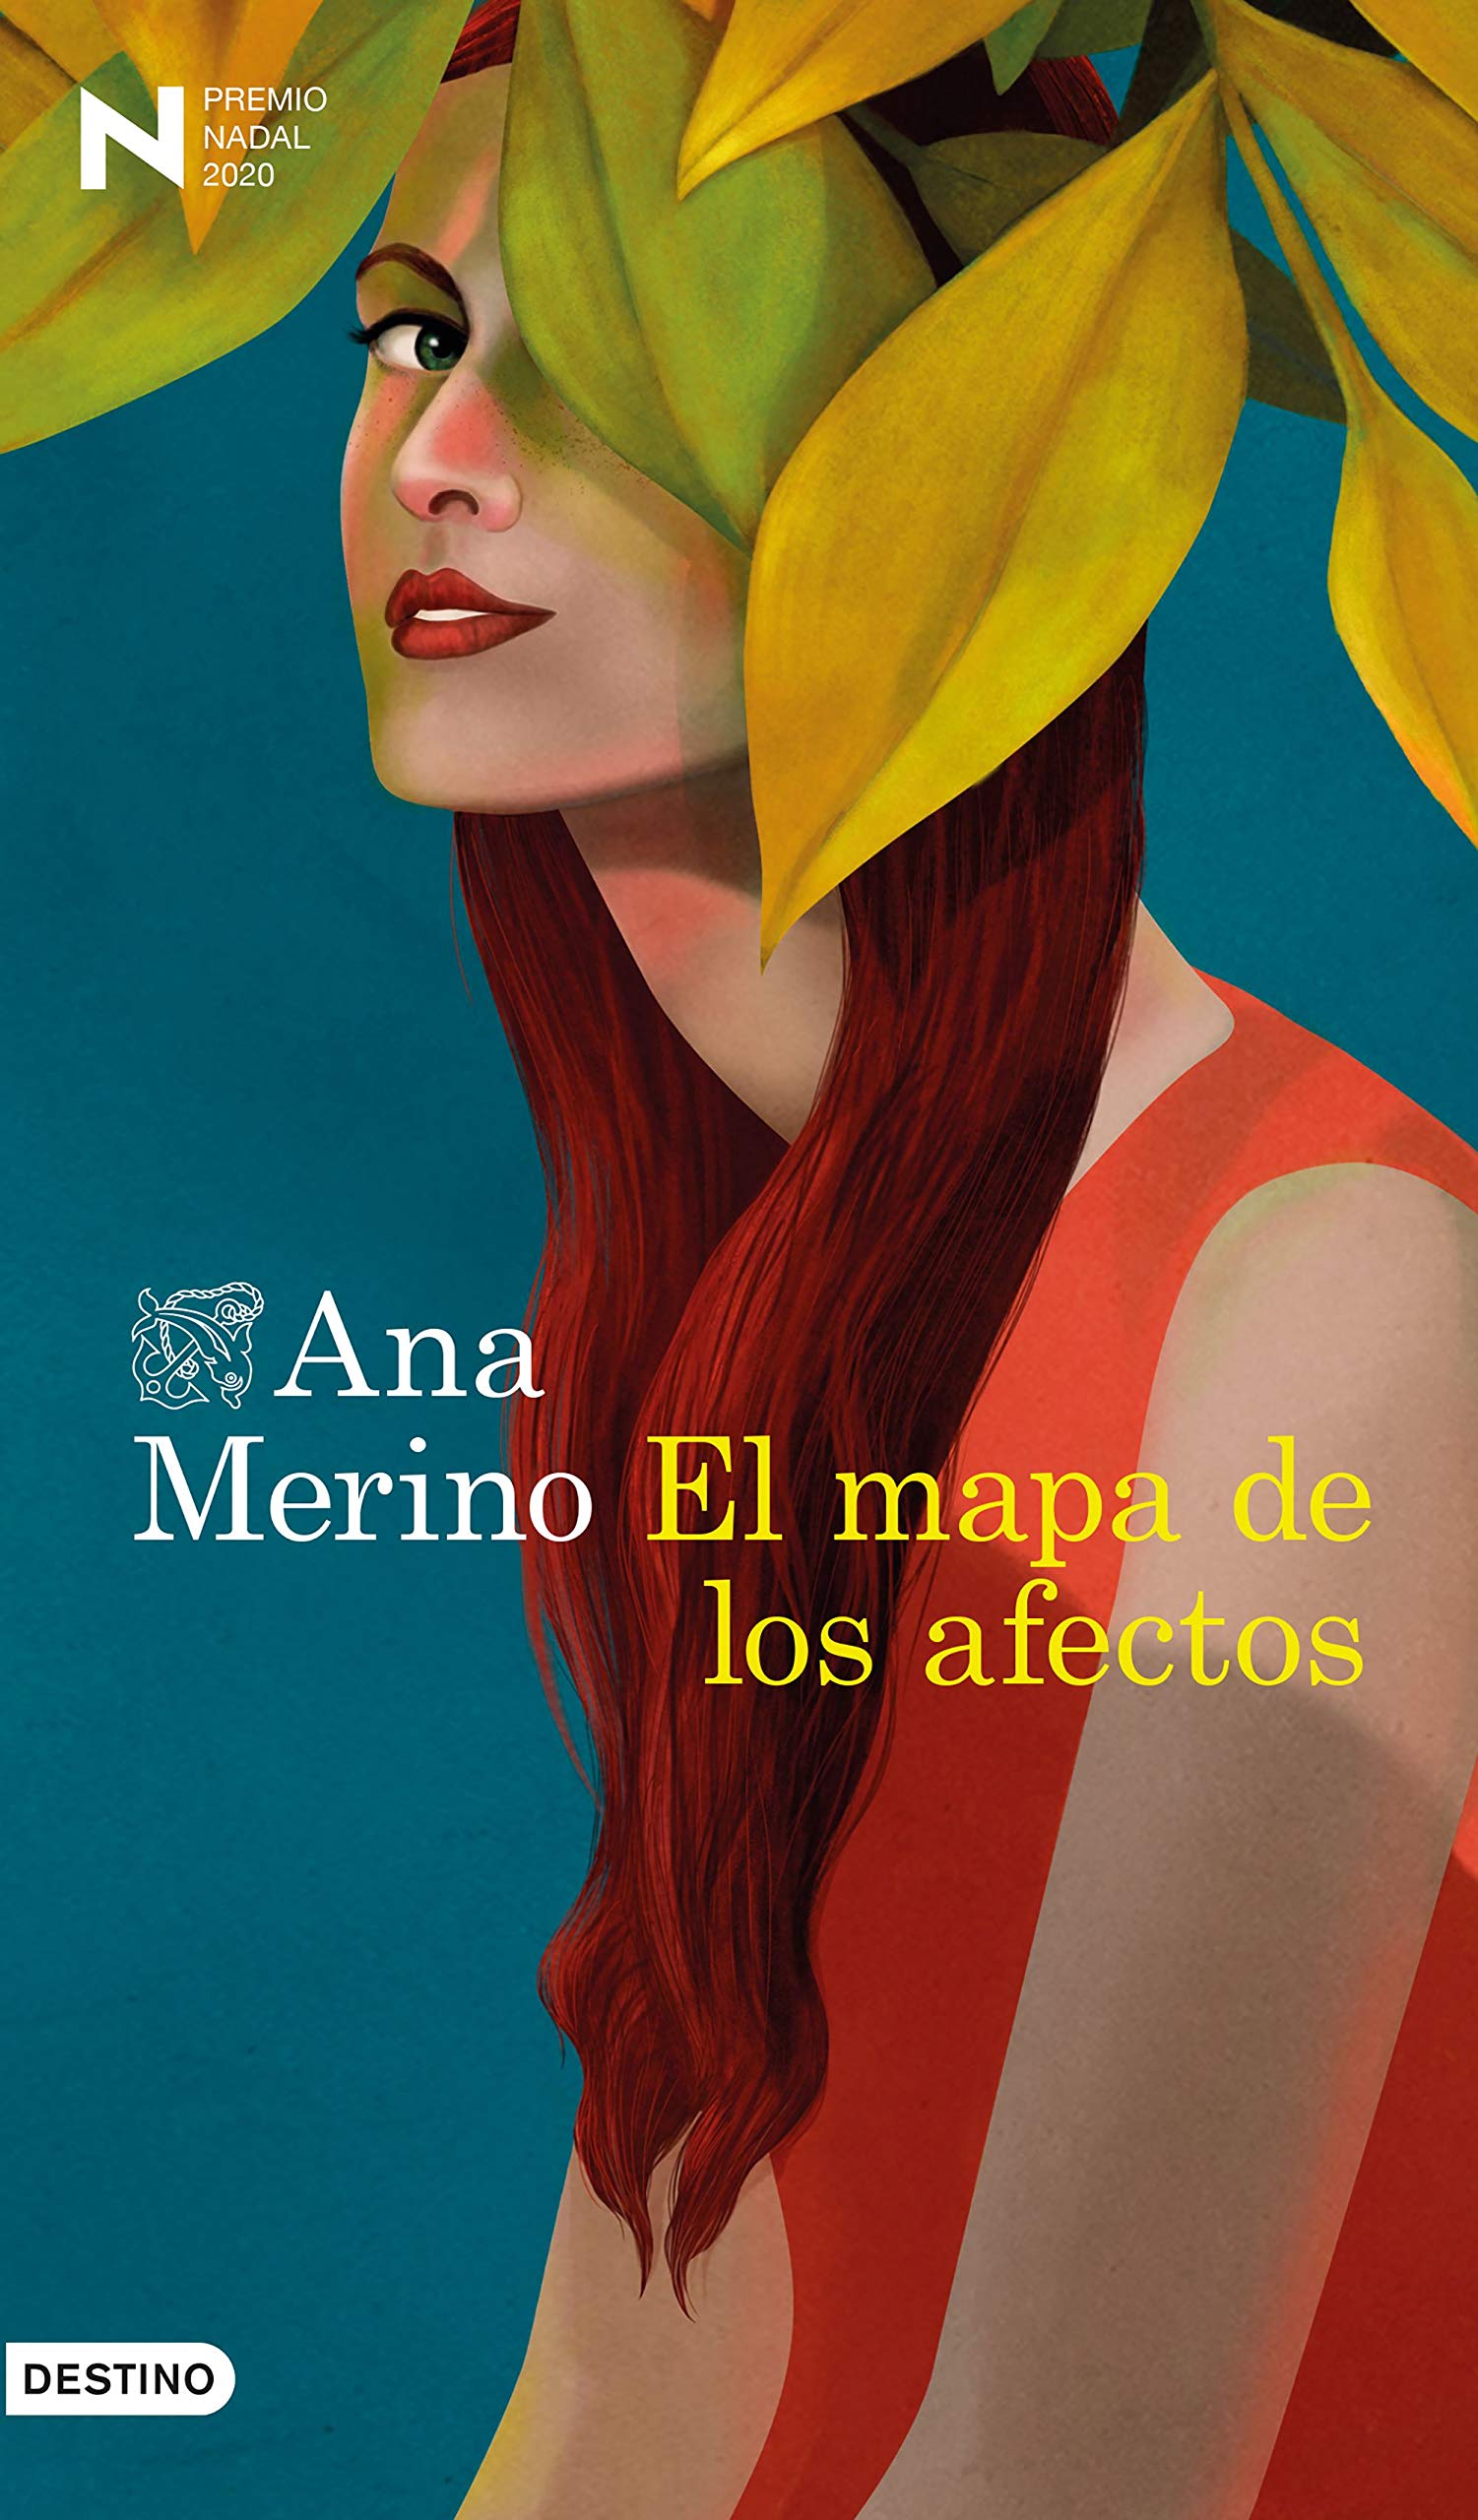 Zenda recomienda: El mapa de los afectos, de Ana Merino